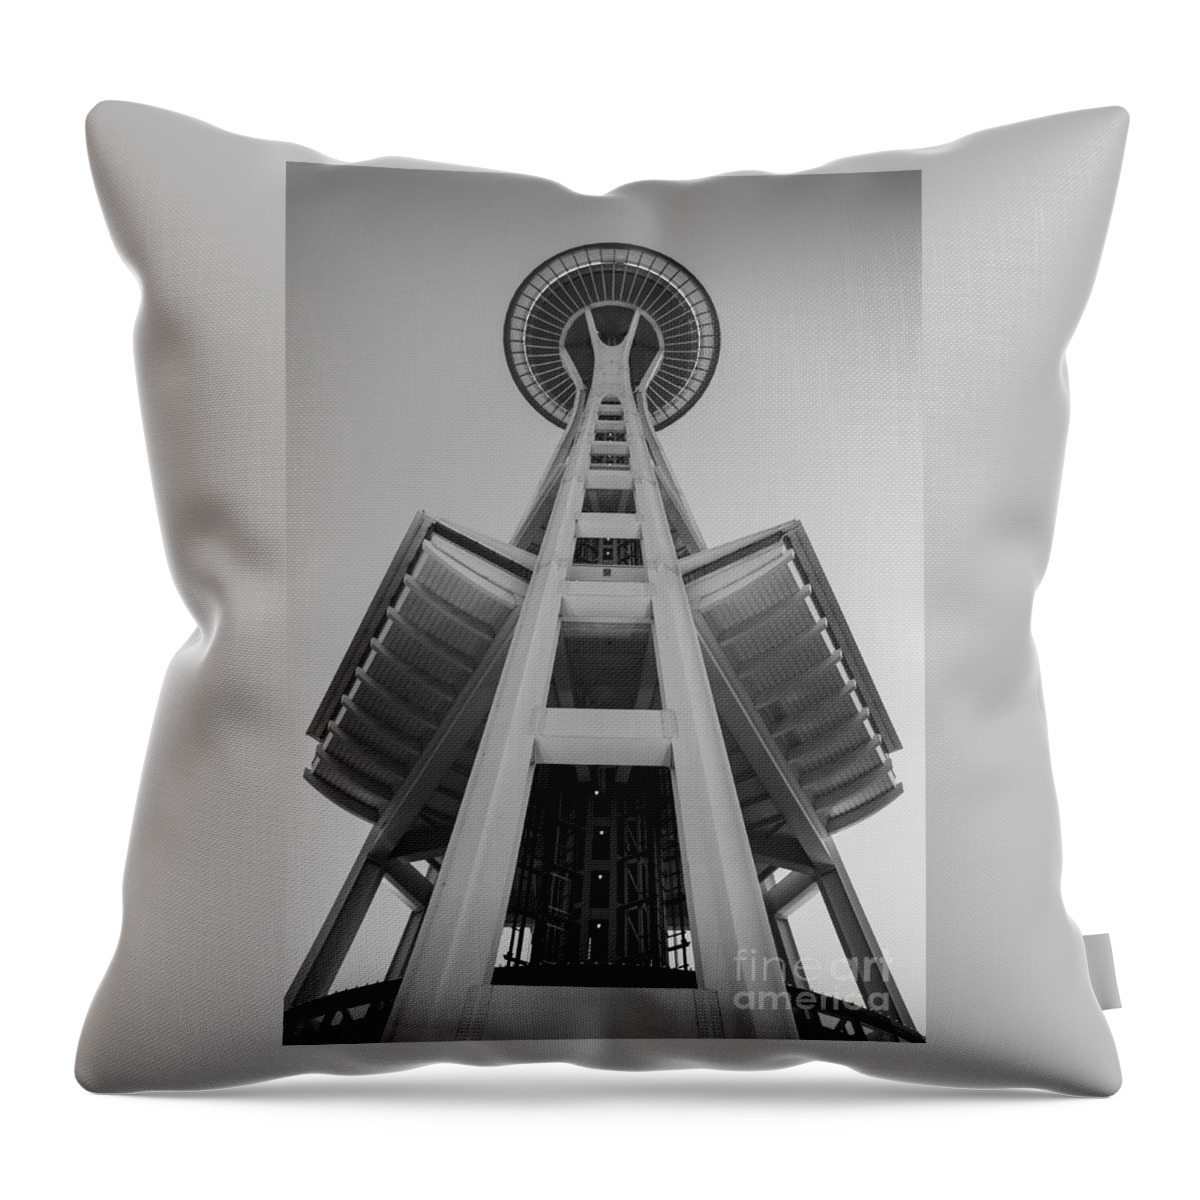 Seattle￿s Space Needle Throw Pillow featuring the photograph Seattle Space Needle in Black and White by Patrick Fennell